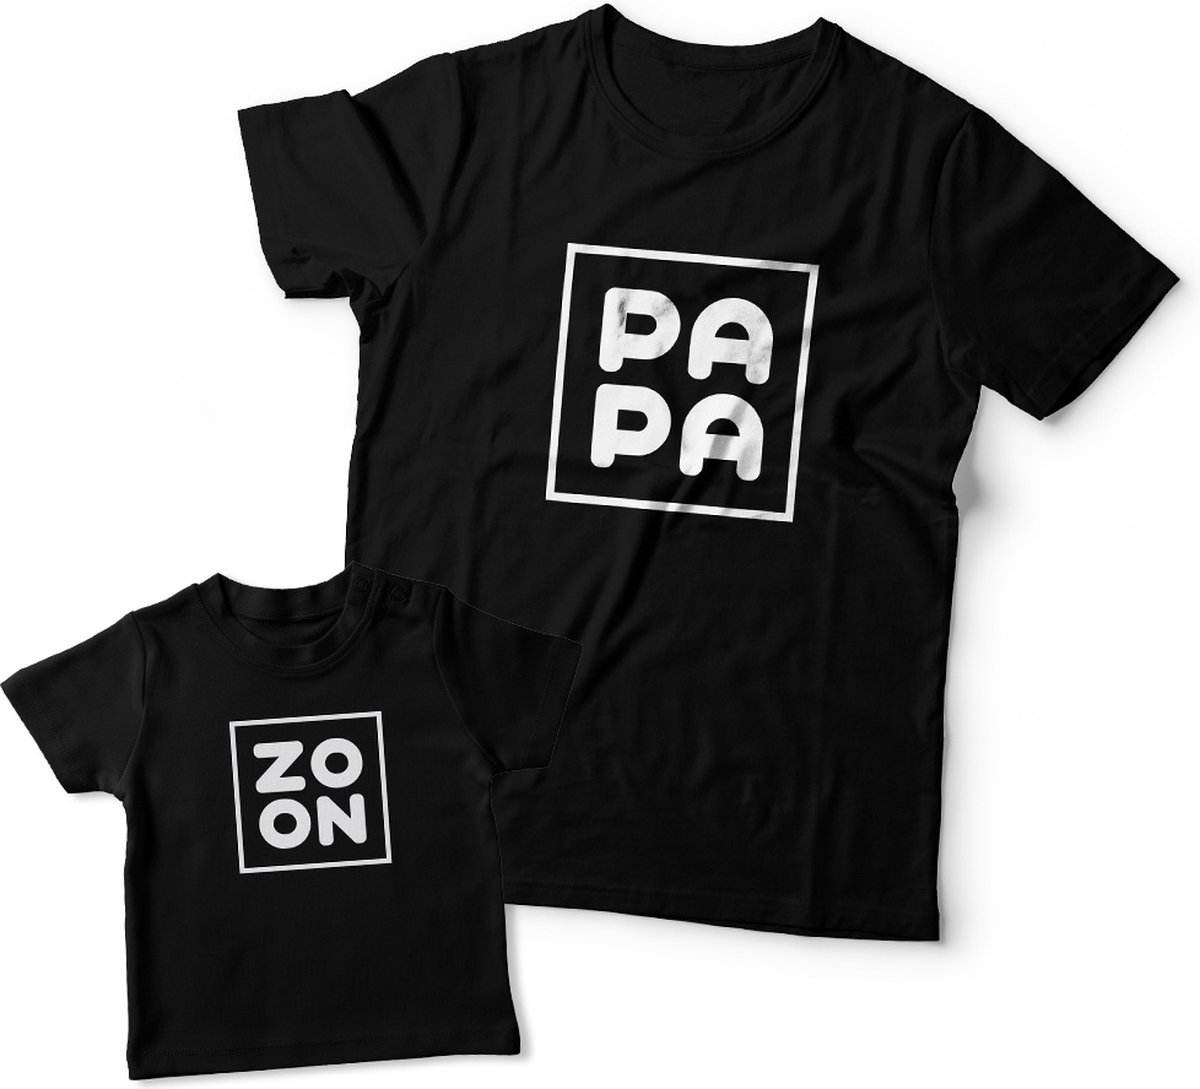 Matching shirts Vader & Zoon | Zoon & Papa | Papa maat XL & Zoon maat 92 (alle maten beschikbaar)